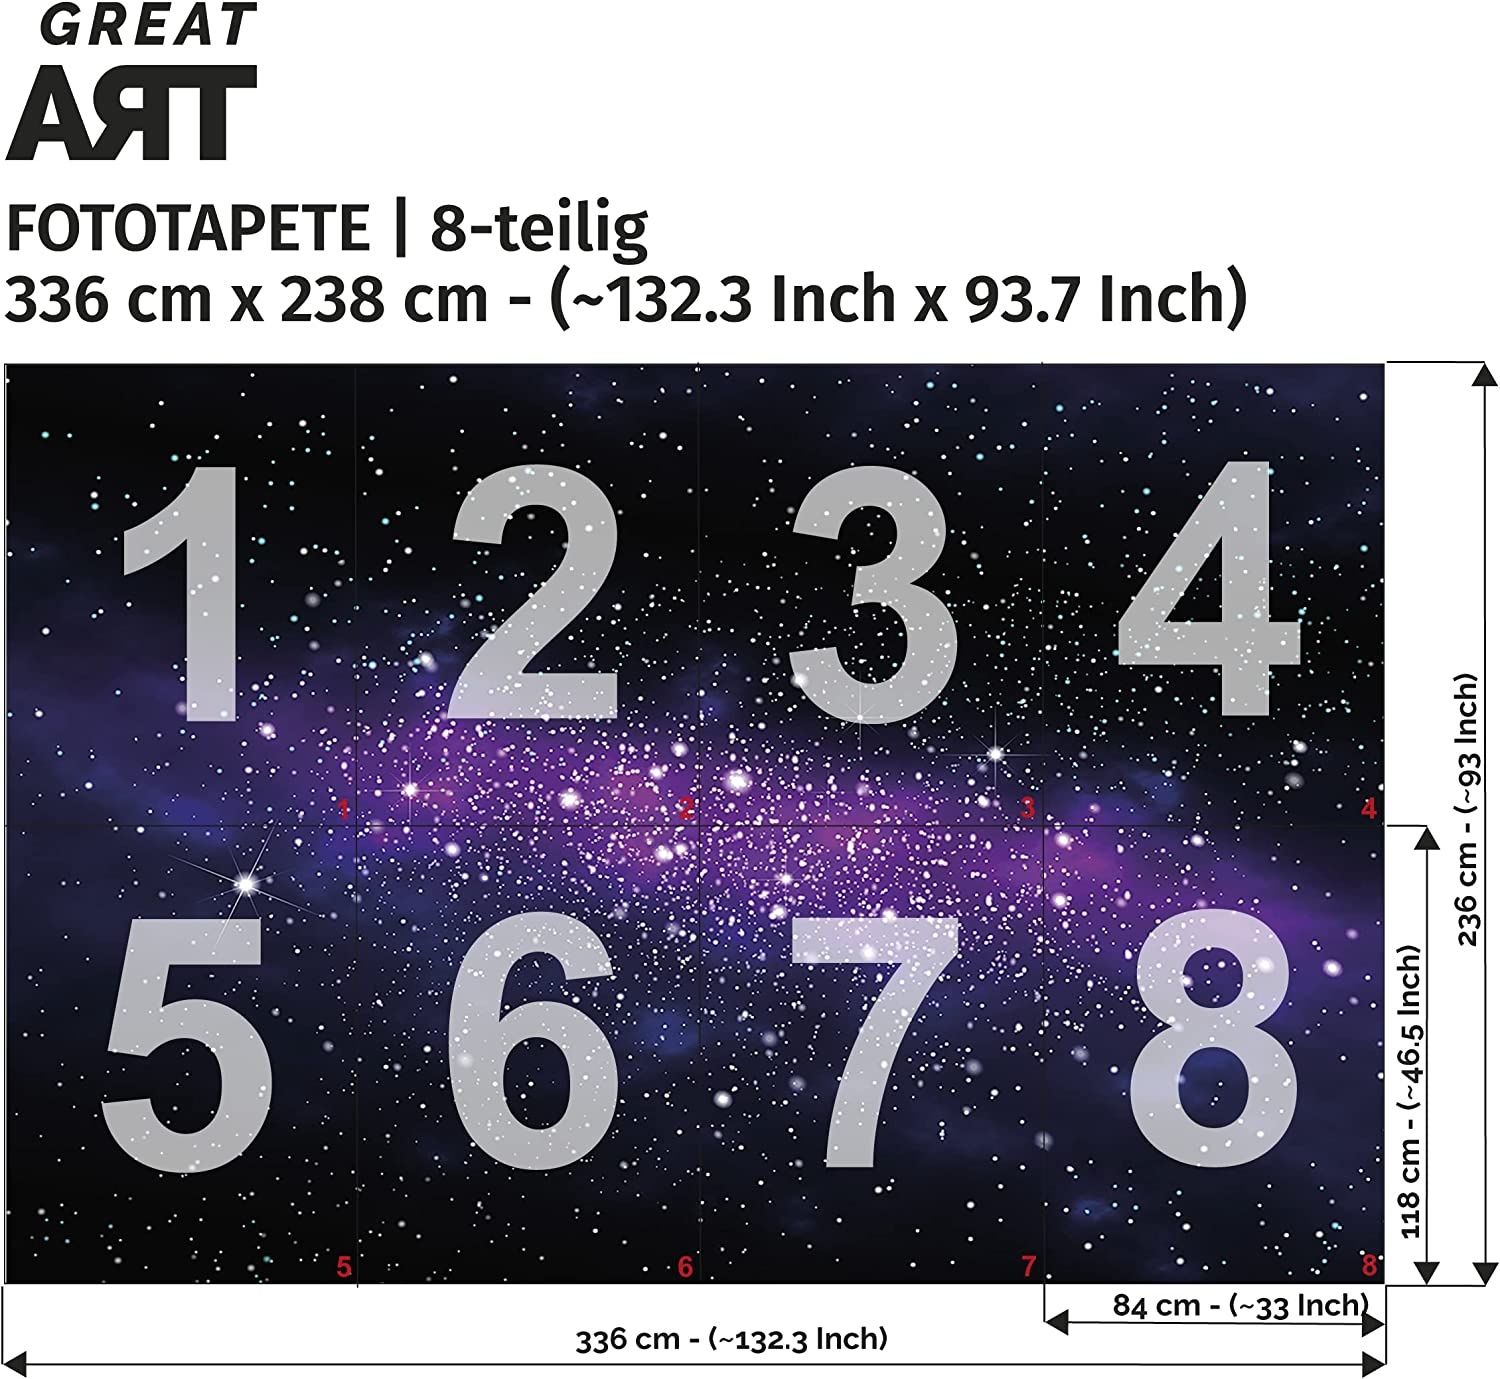 Tapeta Galaxy 336 cm x238 cm długość rolki 84 cm